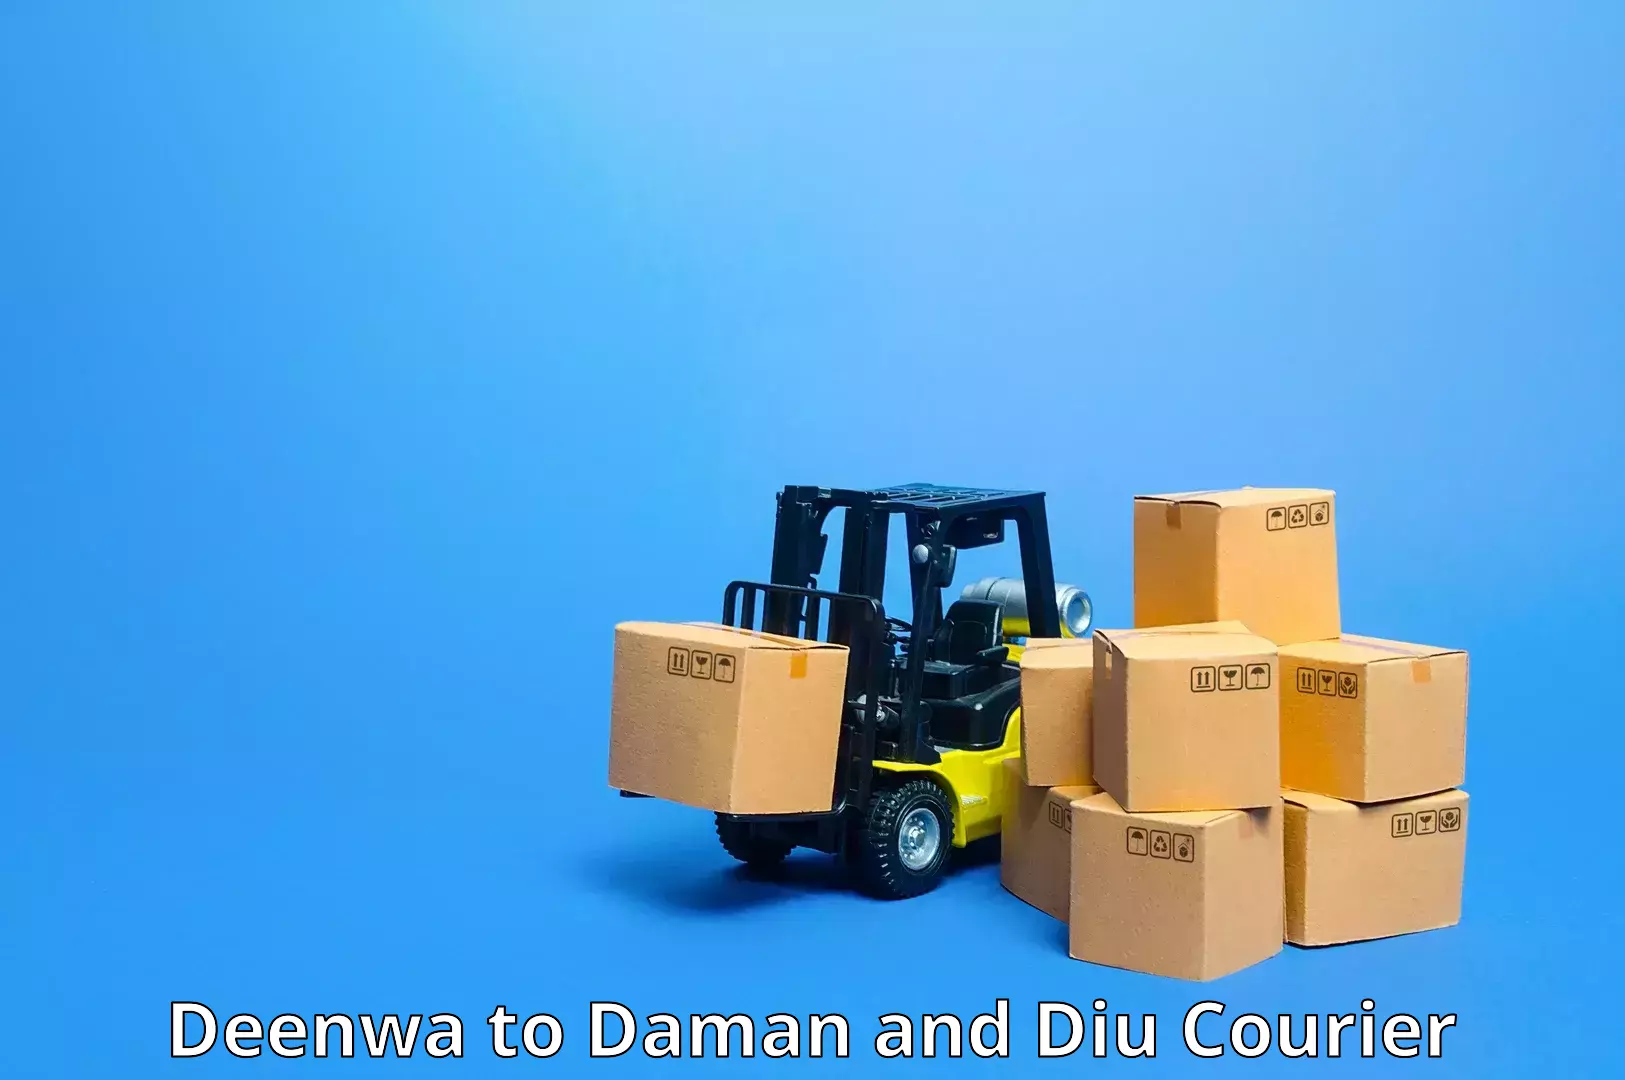 Nationwide shipping capabilities Deenwa to Daman and Diu